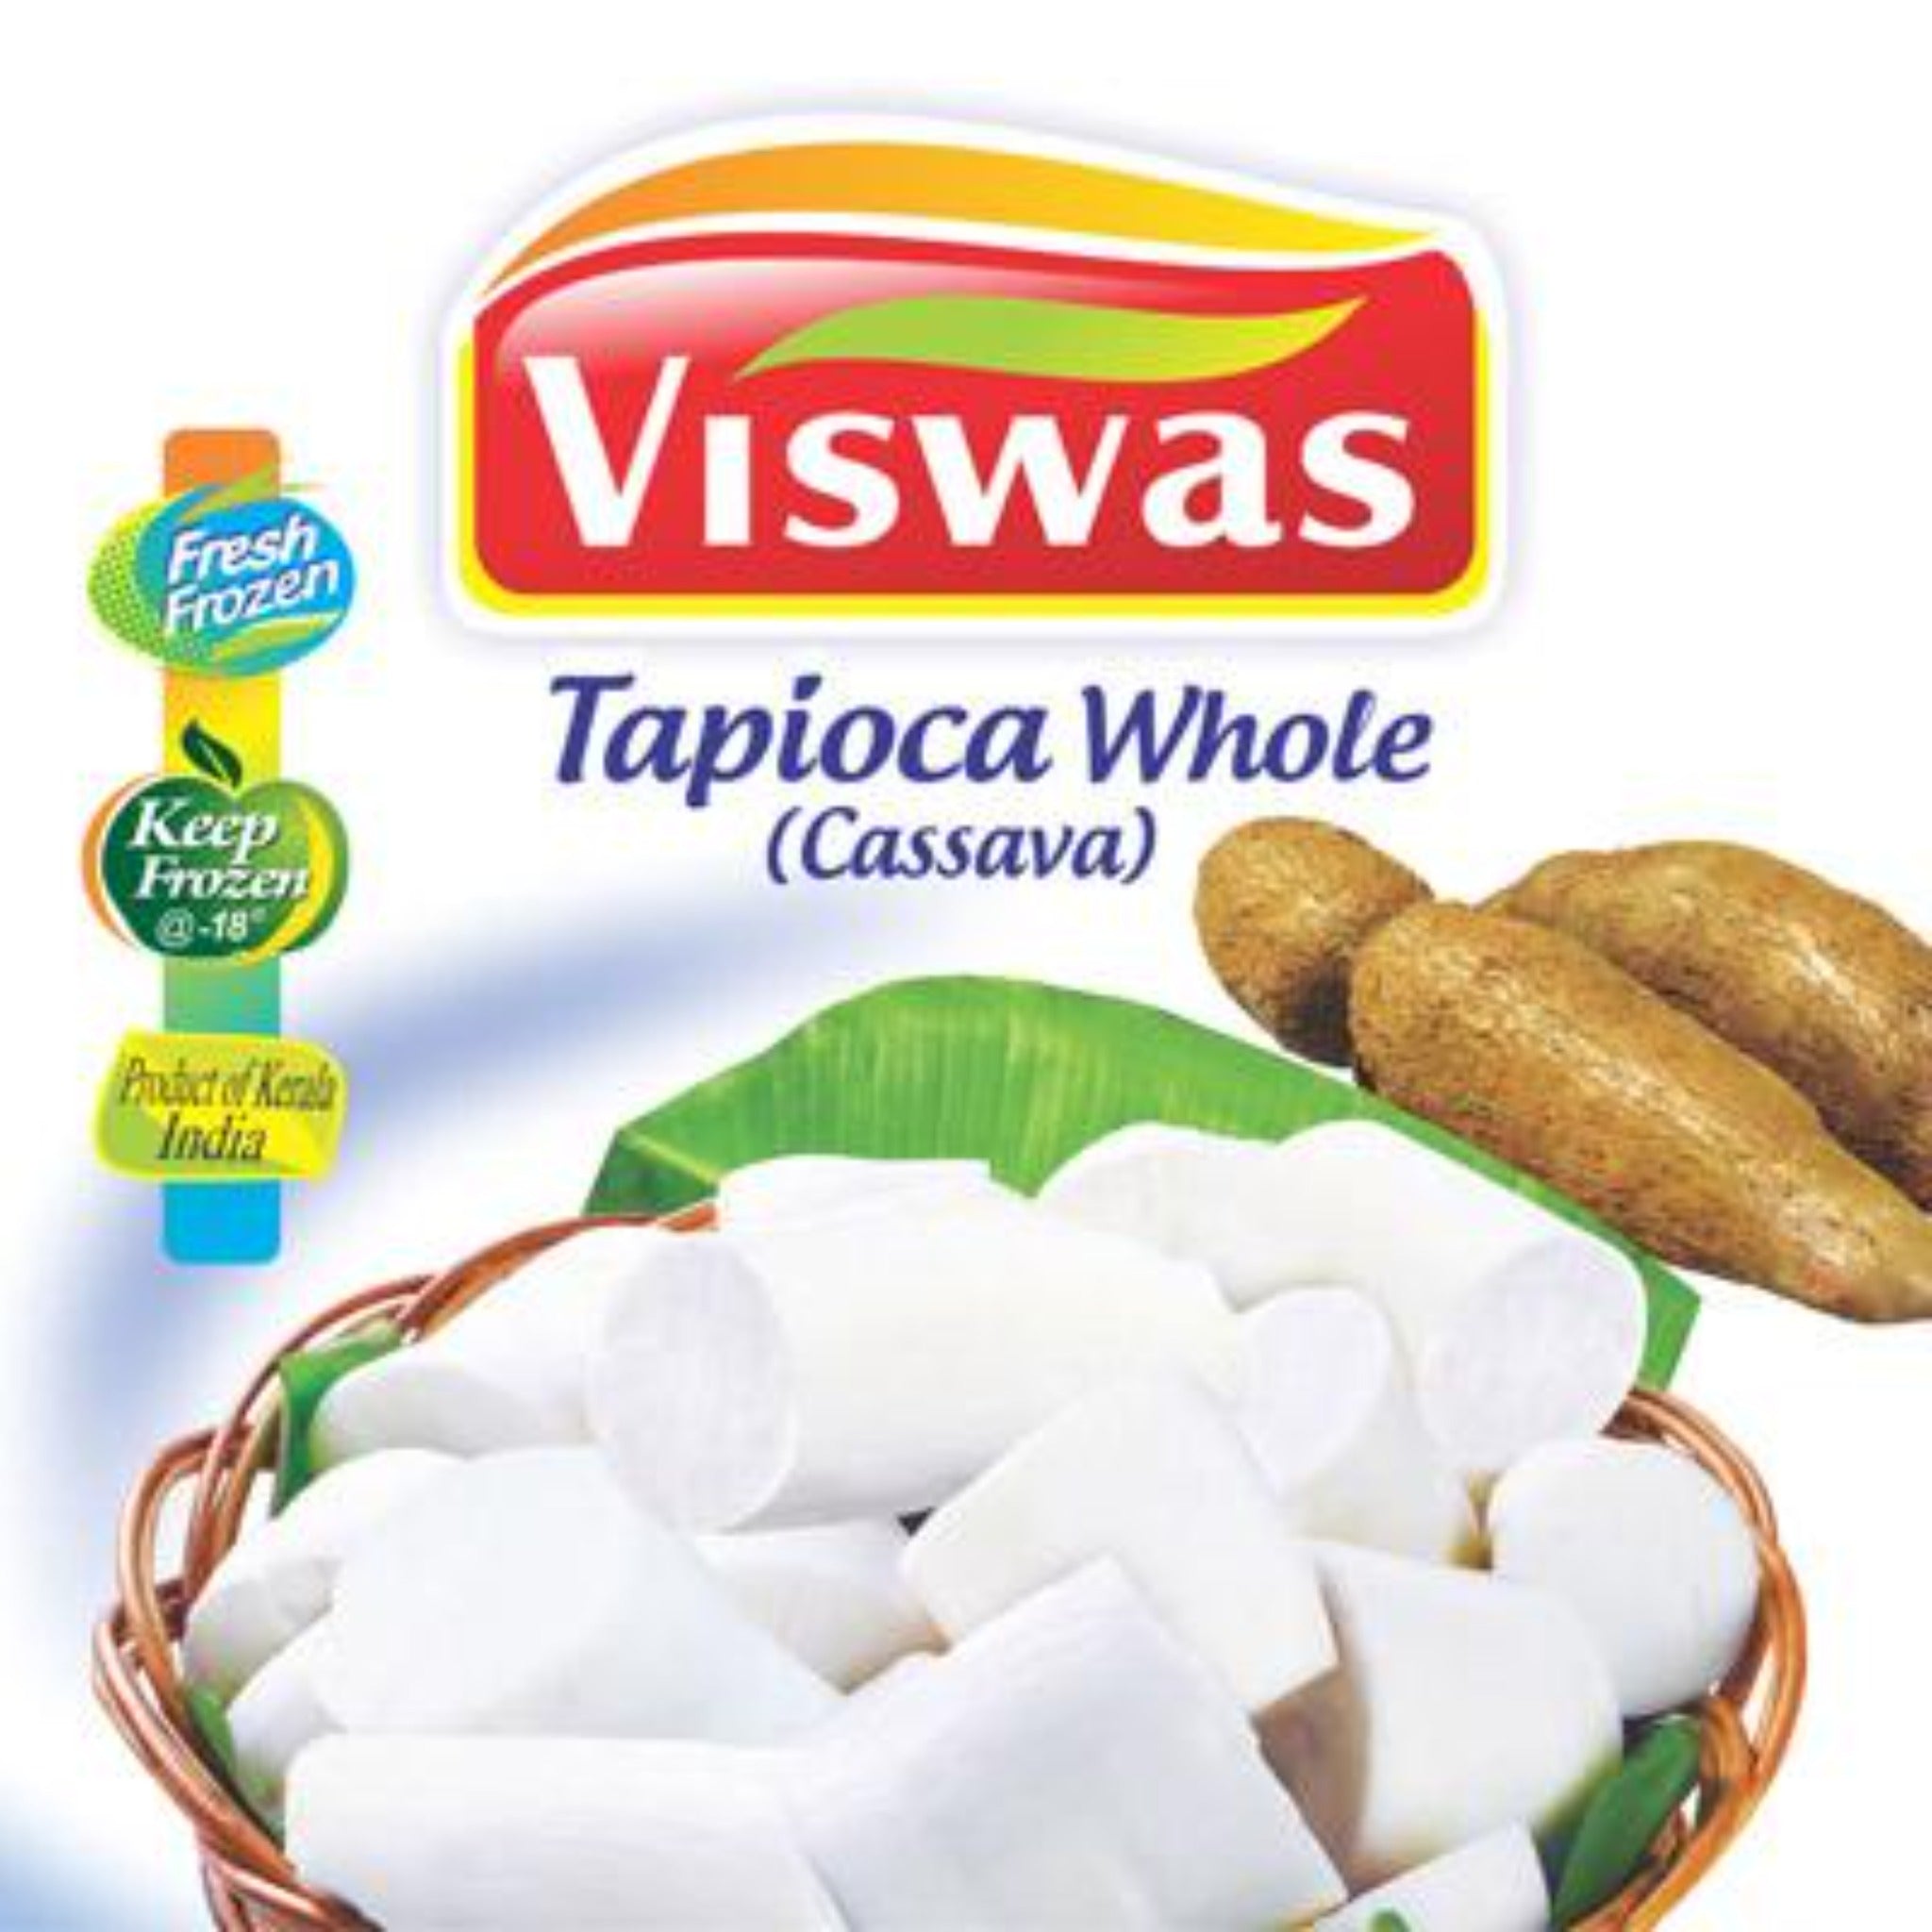 Viswas Tapioca Whole 908g